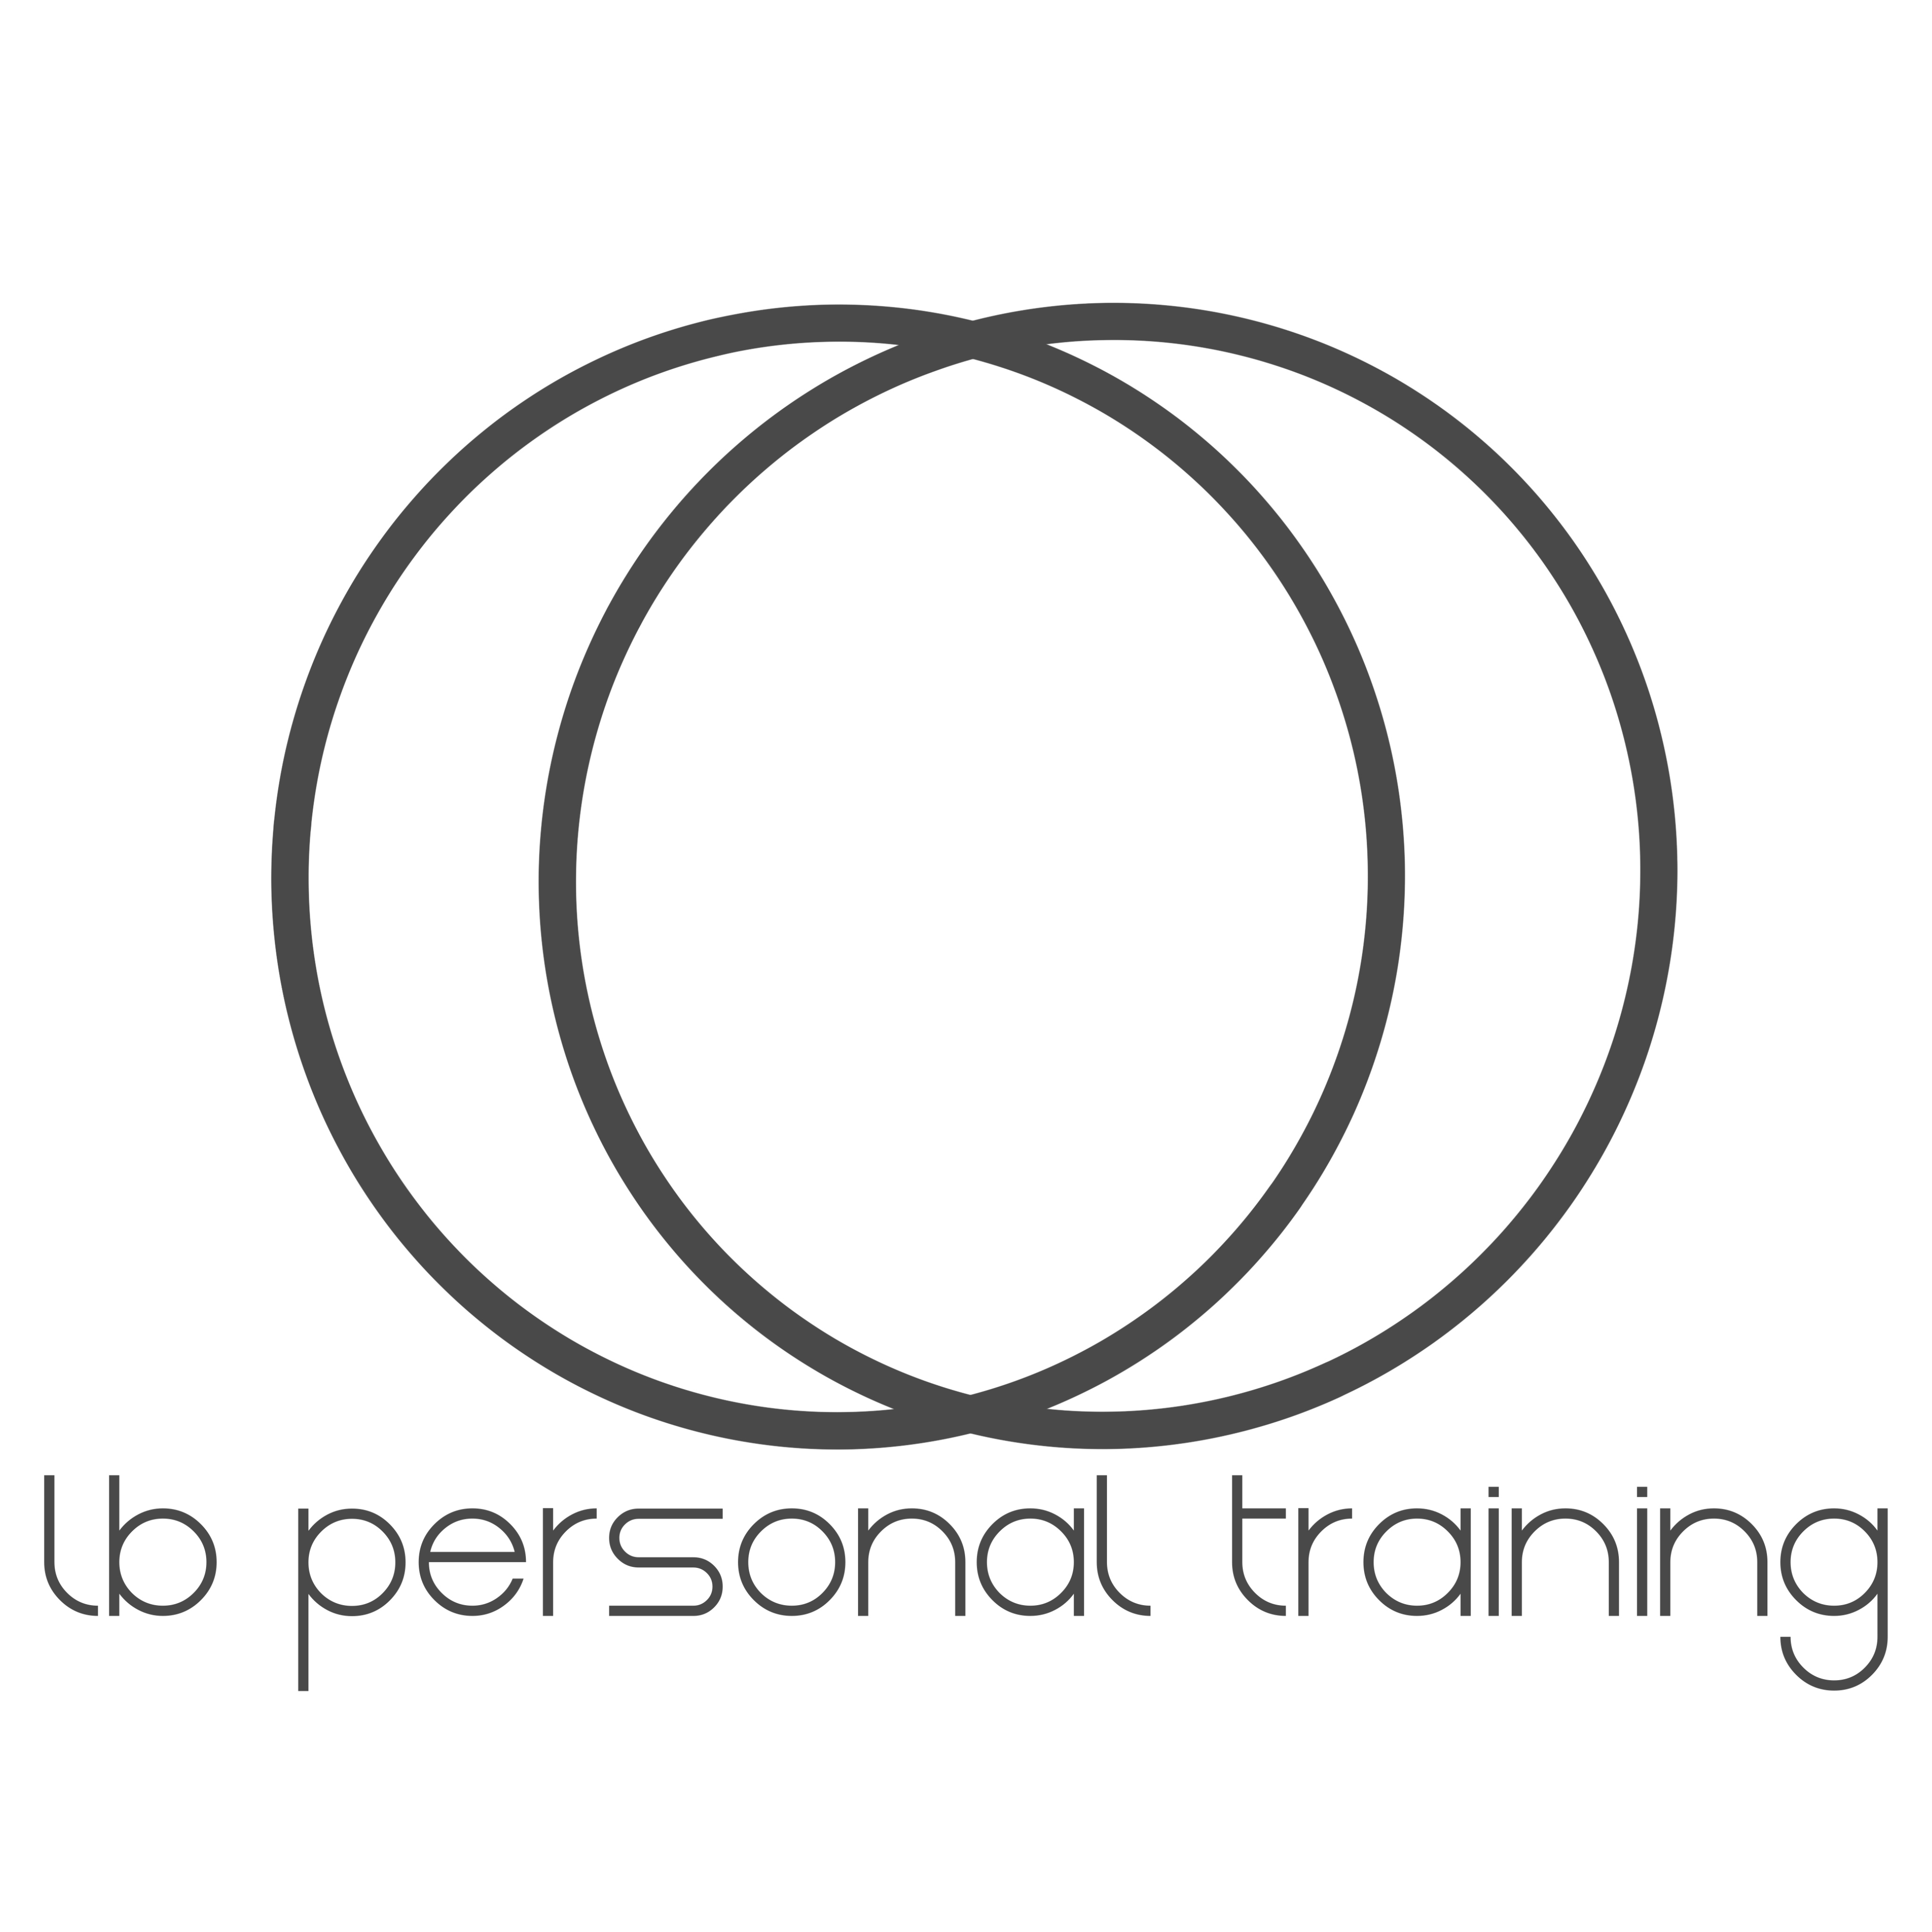 lb personal training